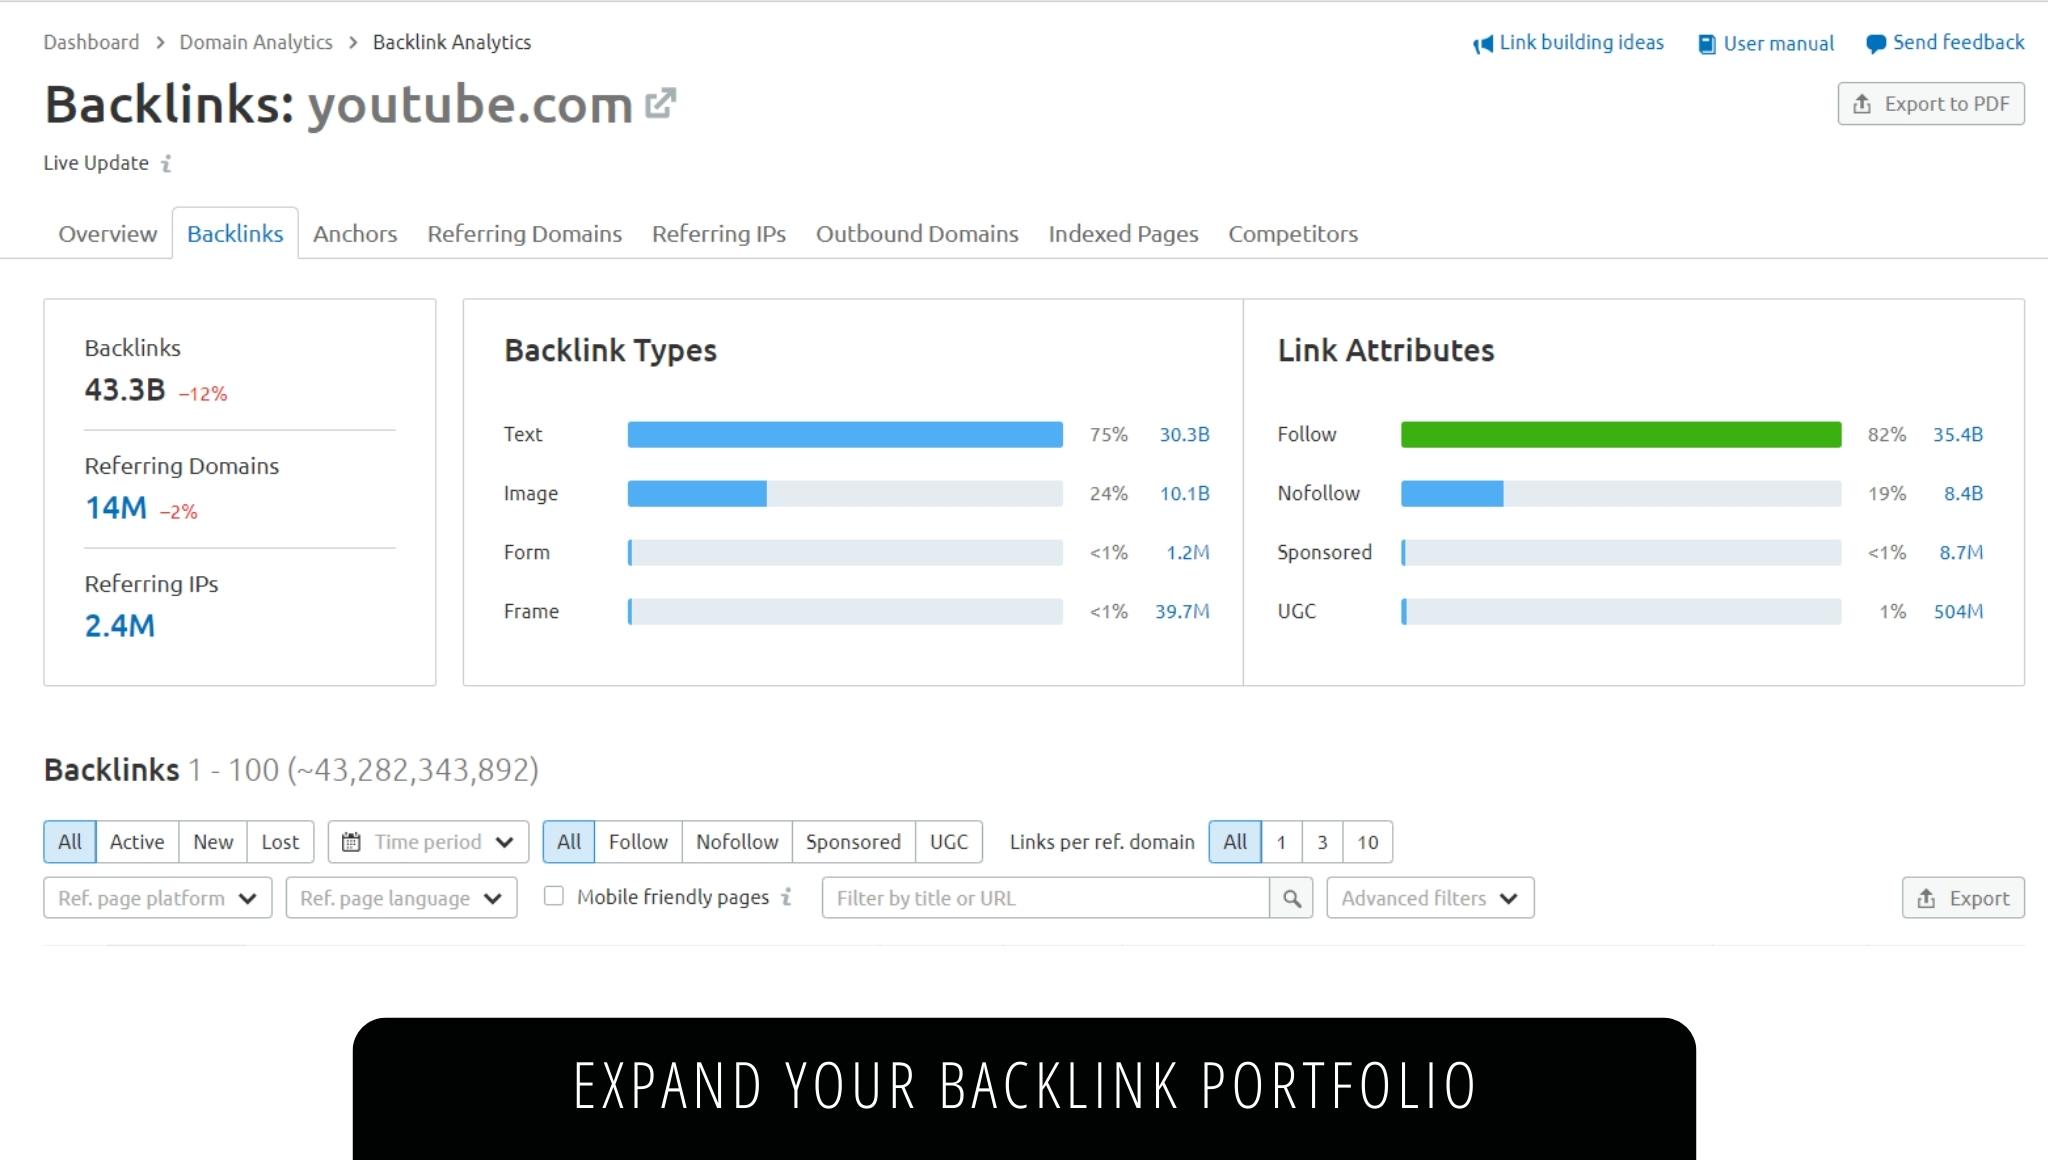 Expand your Backlink portfolio